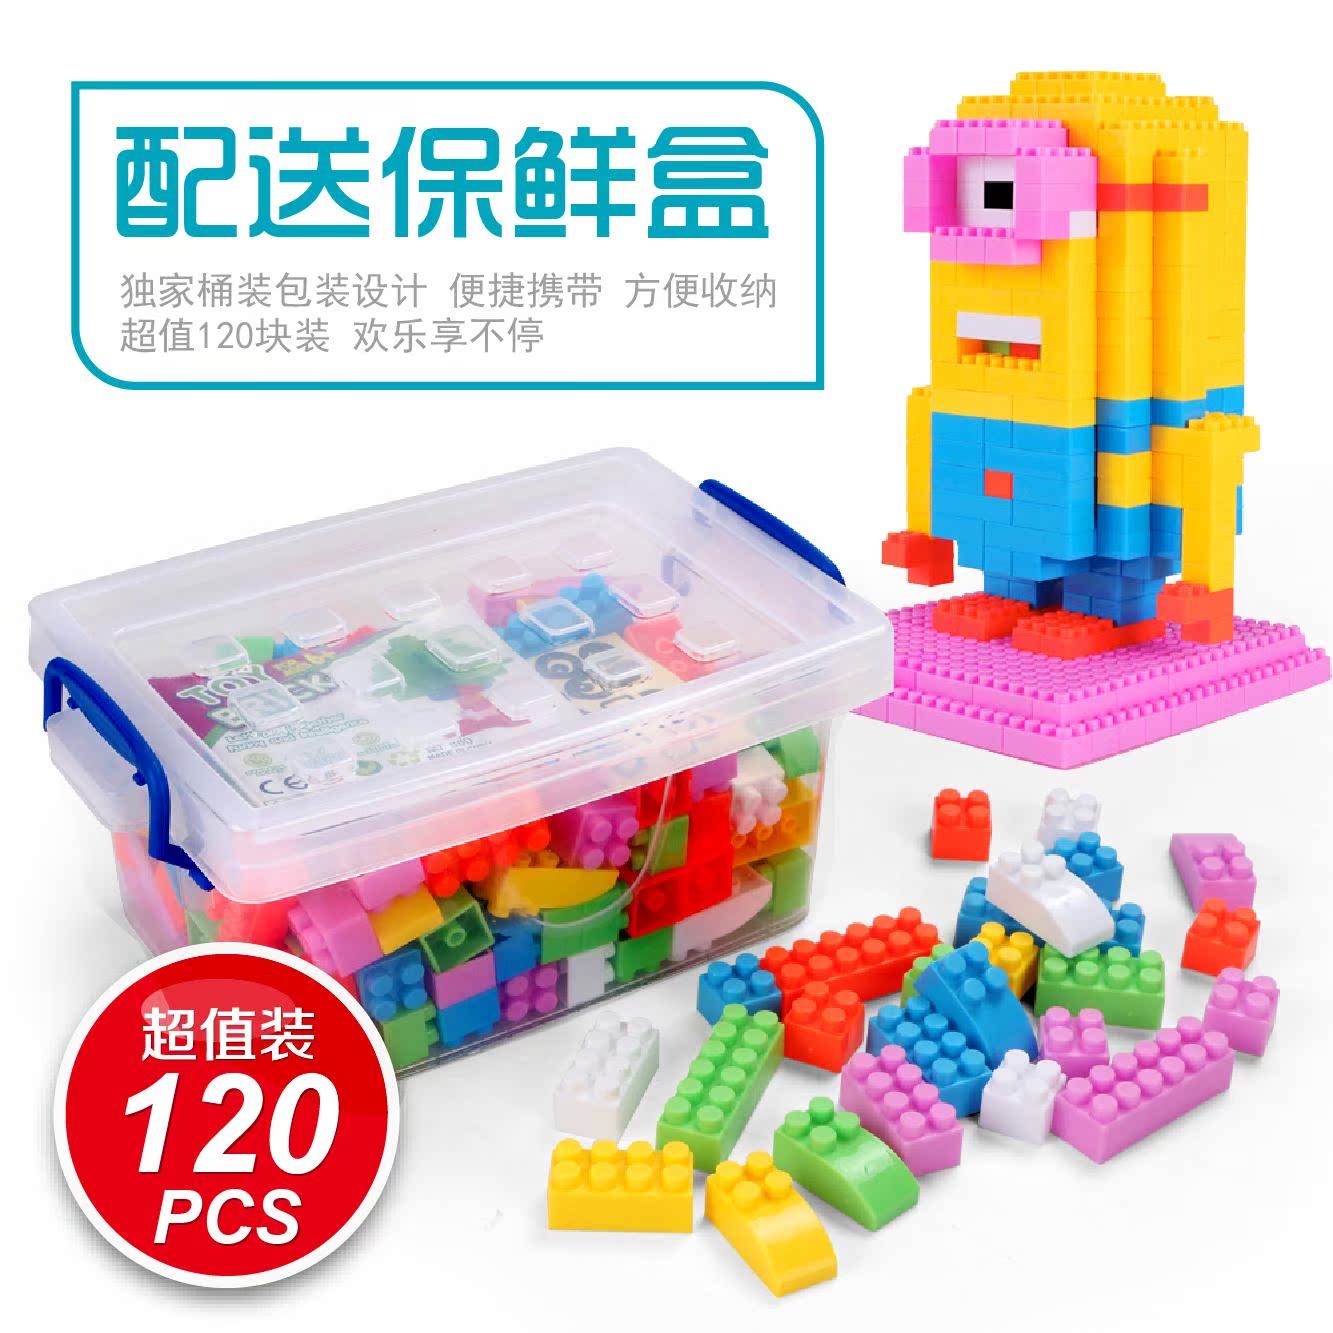 【天天特价】环保儿童桶装积木玩具1-2-3-6周岁小孩 塑料sze5b7